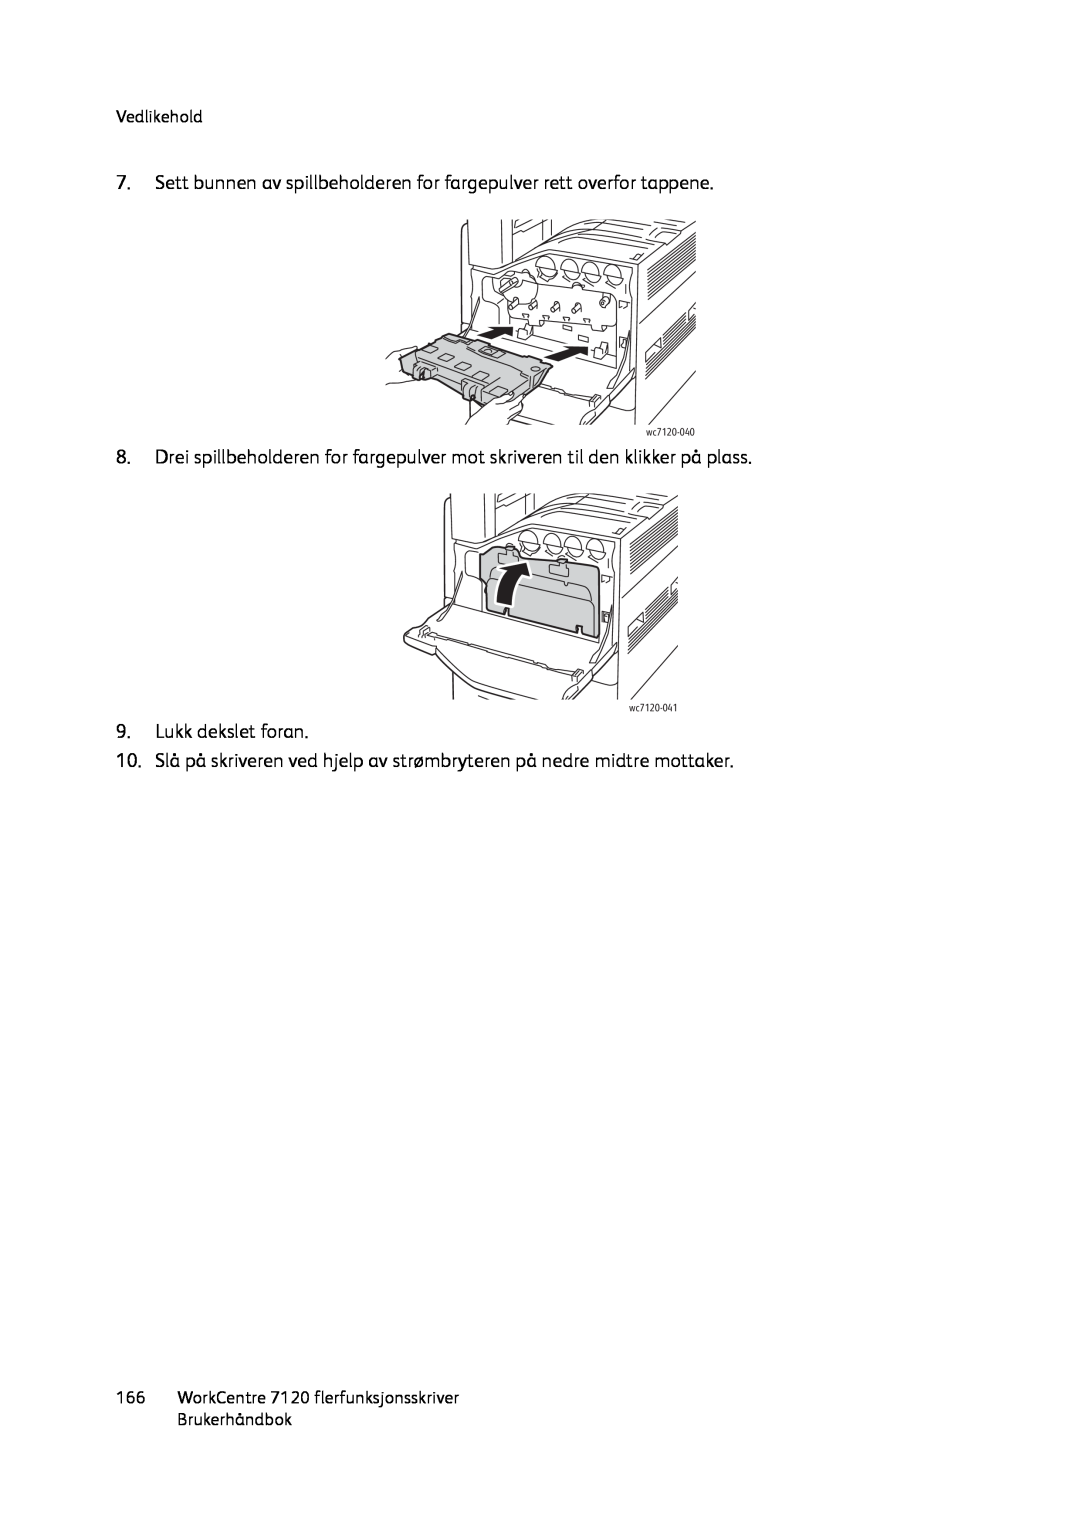 Xerox manual Lukk dekslet foran, Vedlikehold, WorkCentre 7120 flerfunksjonsskriver Brukerhåndbok, wc7120-040, wc7120-041 